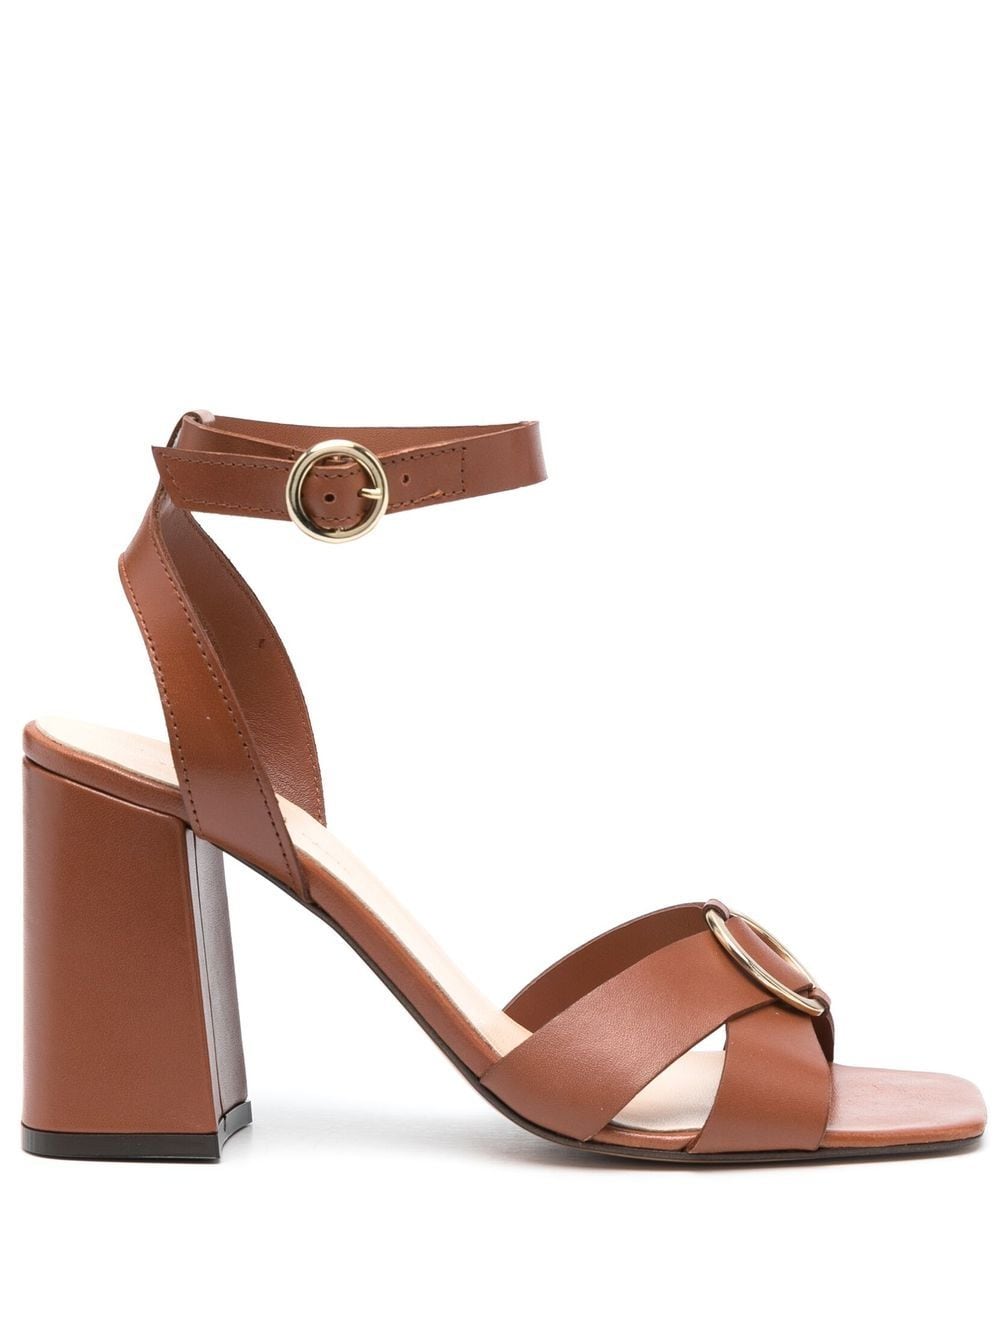 Tila March 98mm block-heel sandals - Brown von Tila March